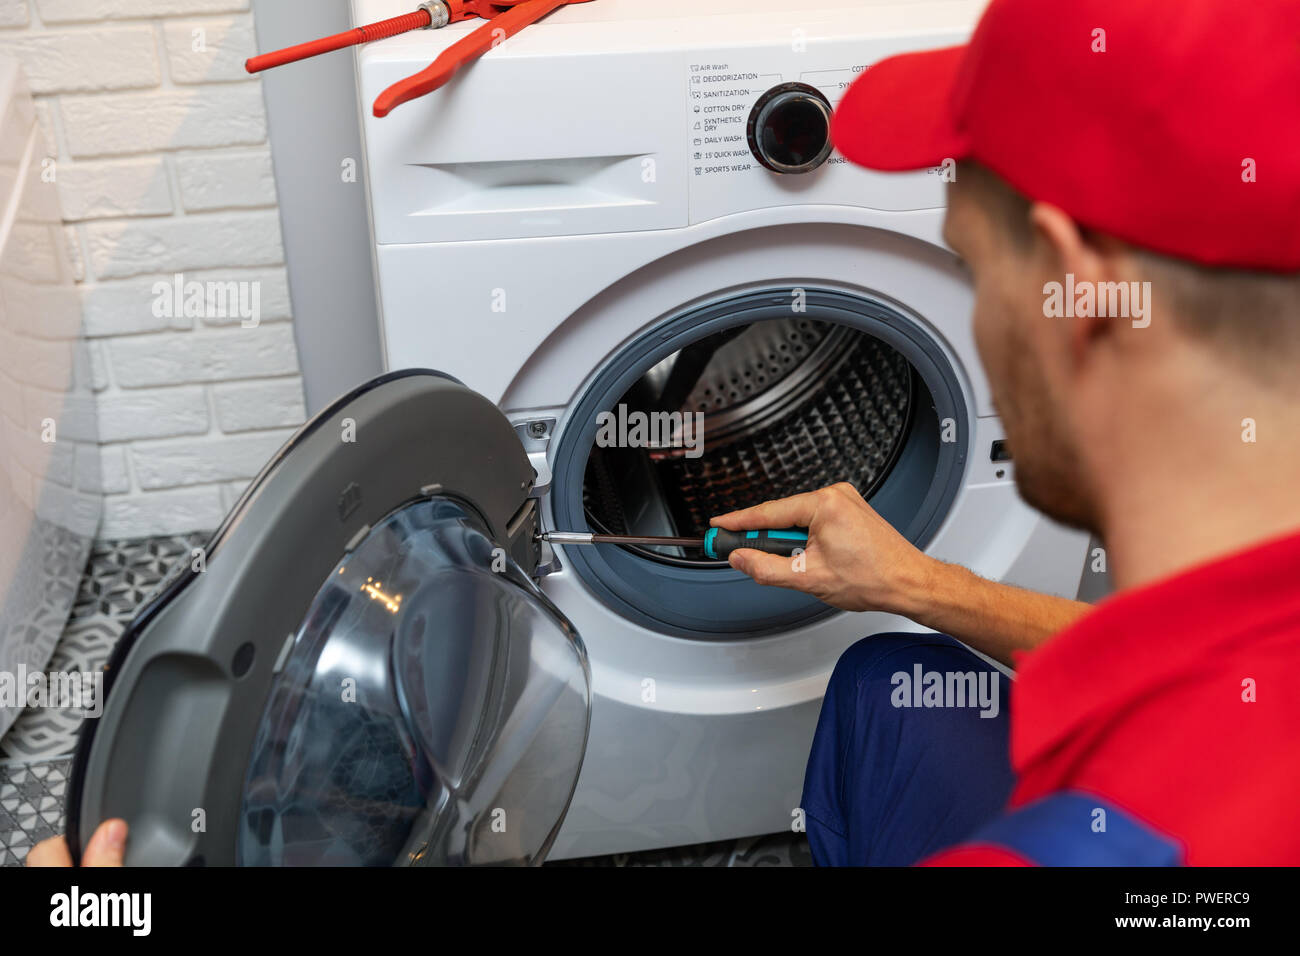 repairman with screwdriver repairing washing machine door Stock Photo